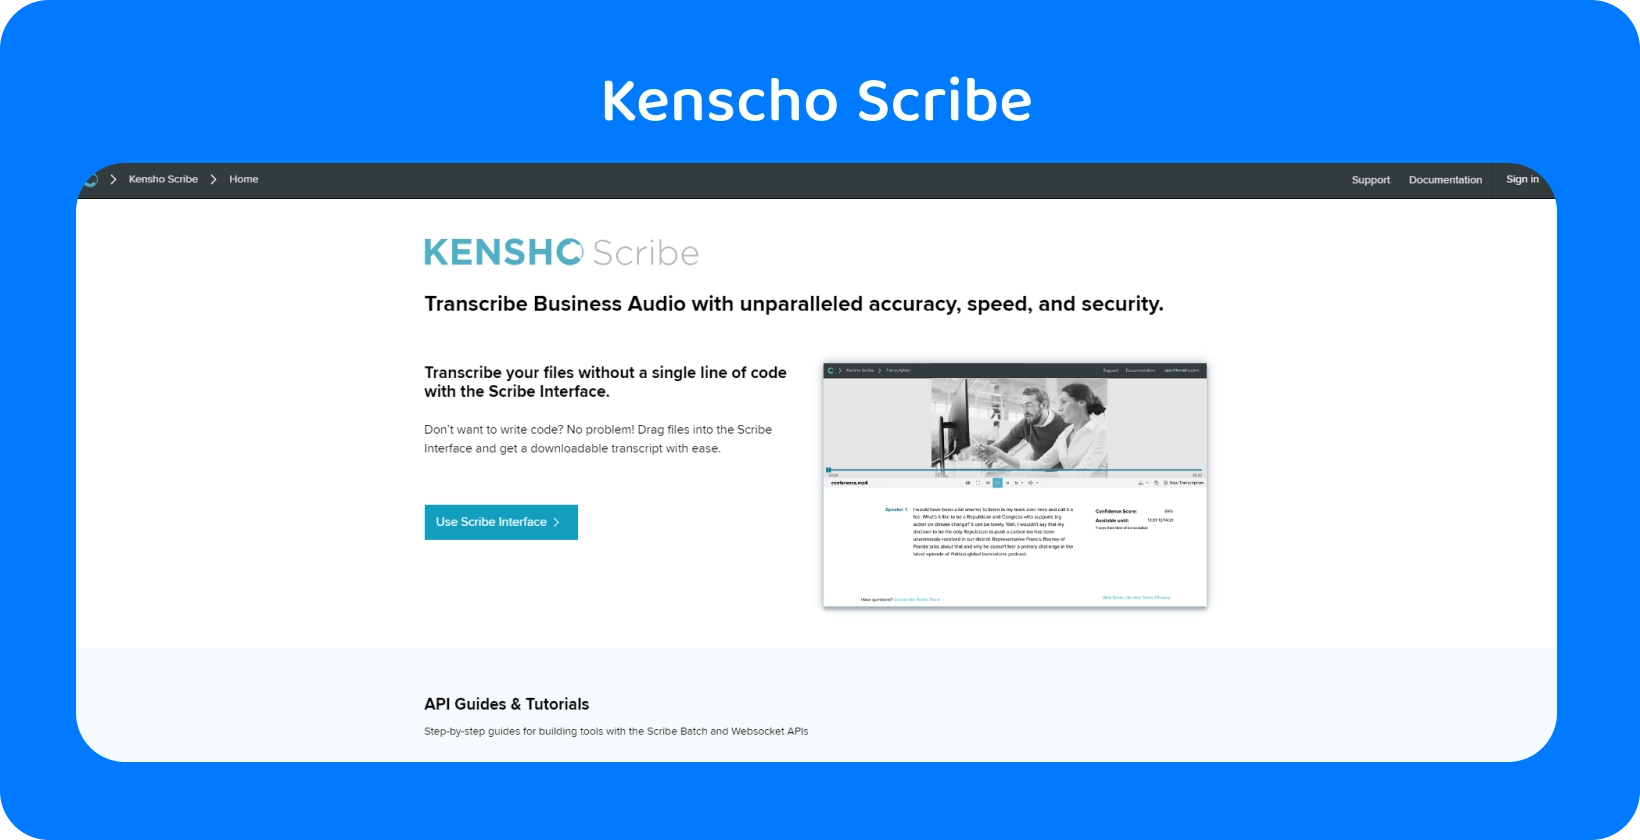 Pagina del sito Web Kensho con testo "SOLUZIONI", che offre strumenti avanzati di AI che completano la dettatura di Word.